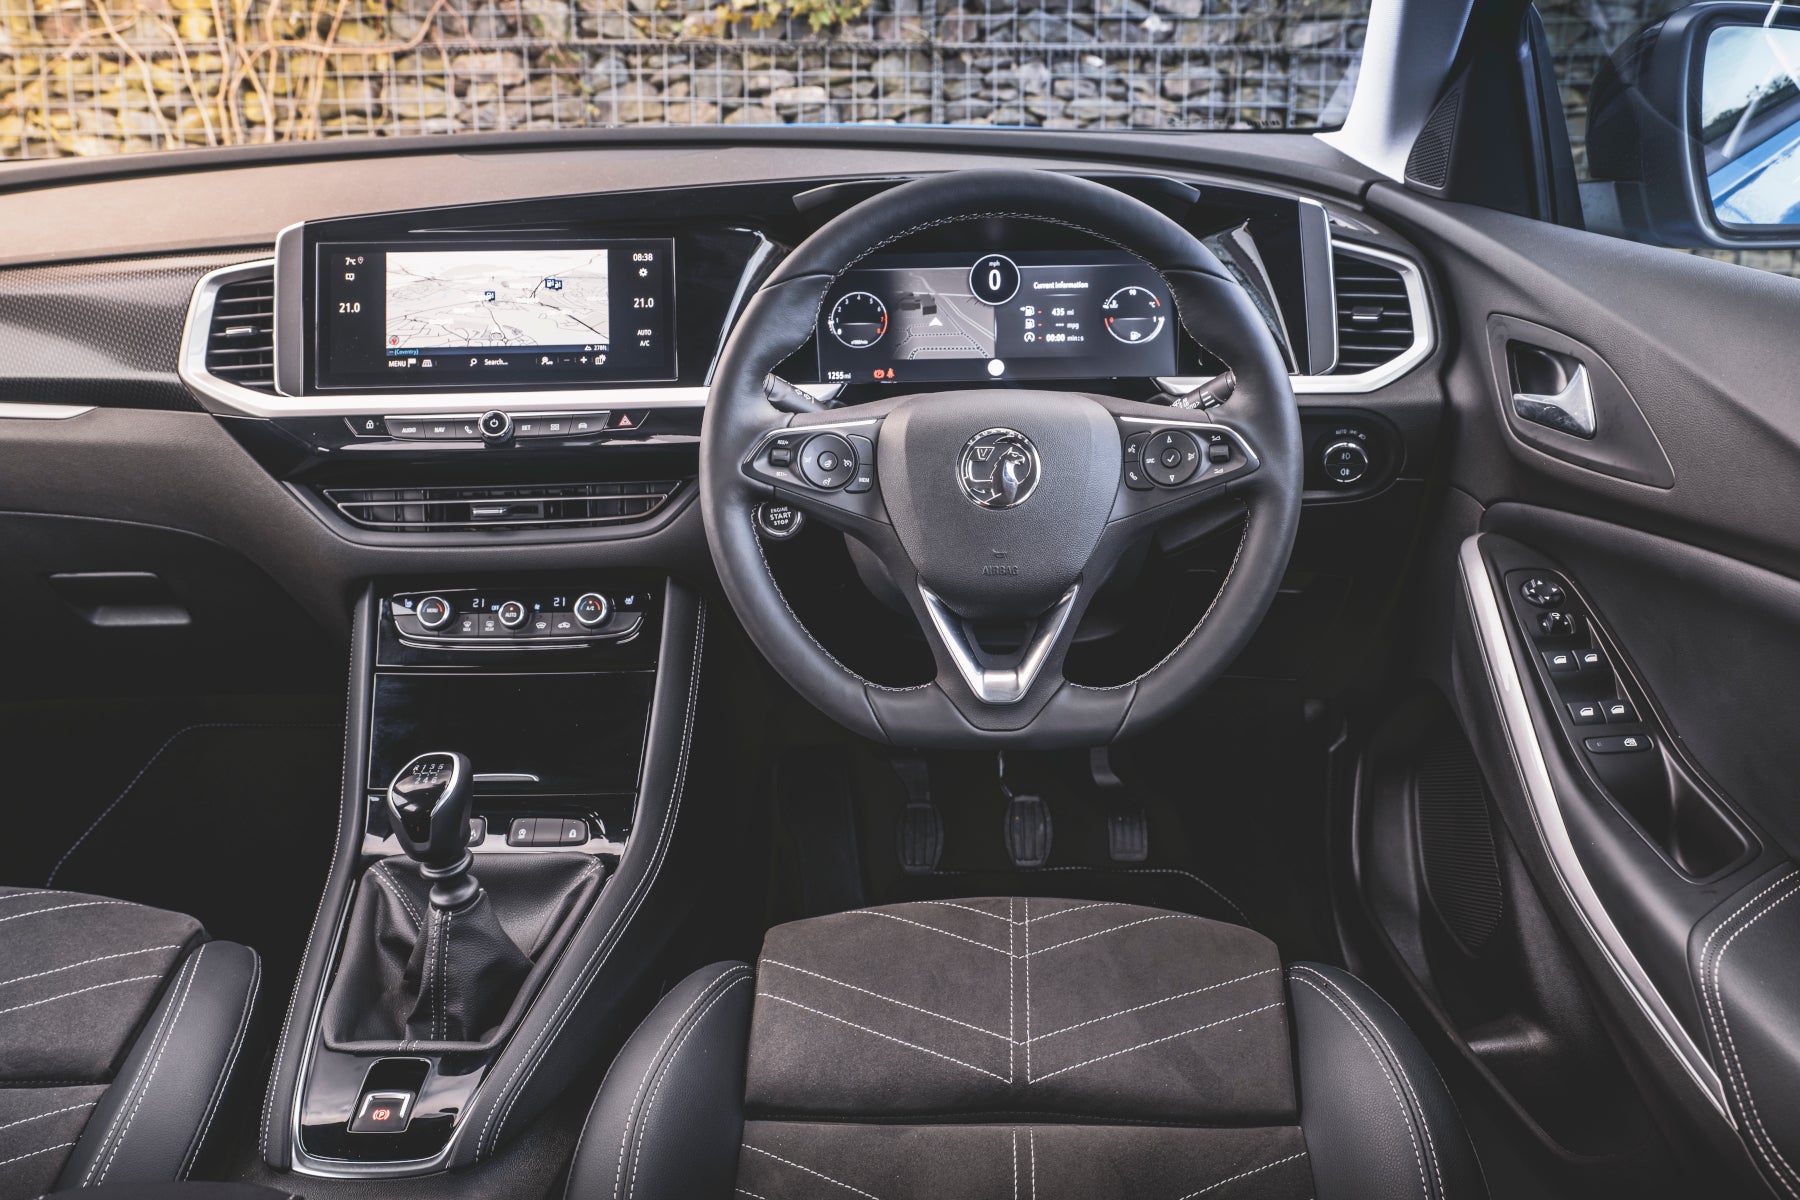 Vauxhall Grandland Review 2022 - interior and dash